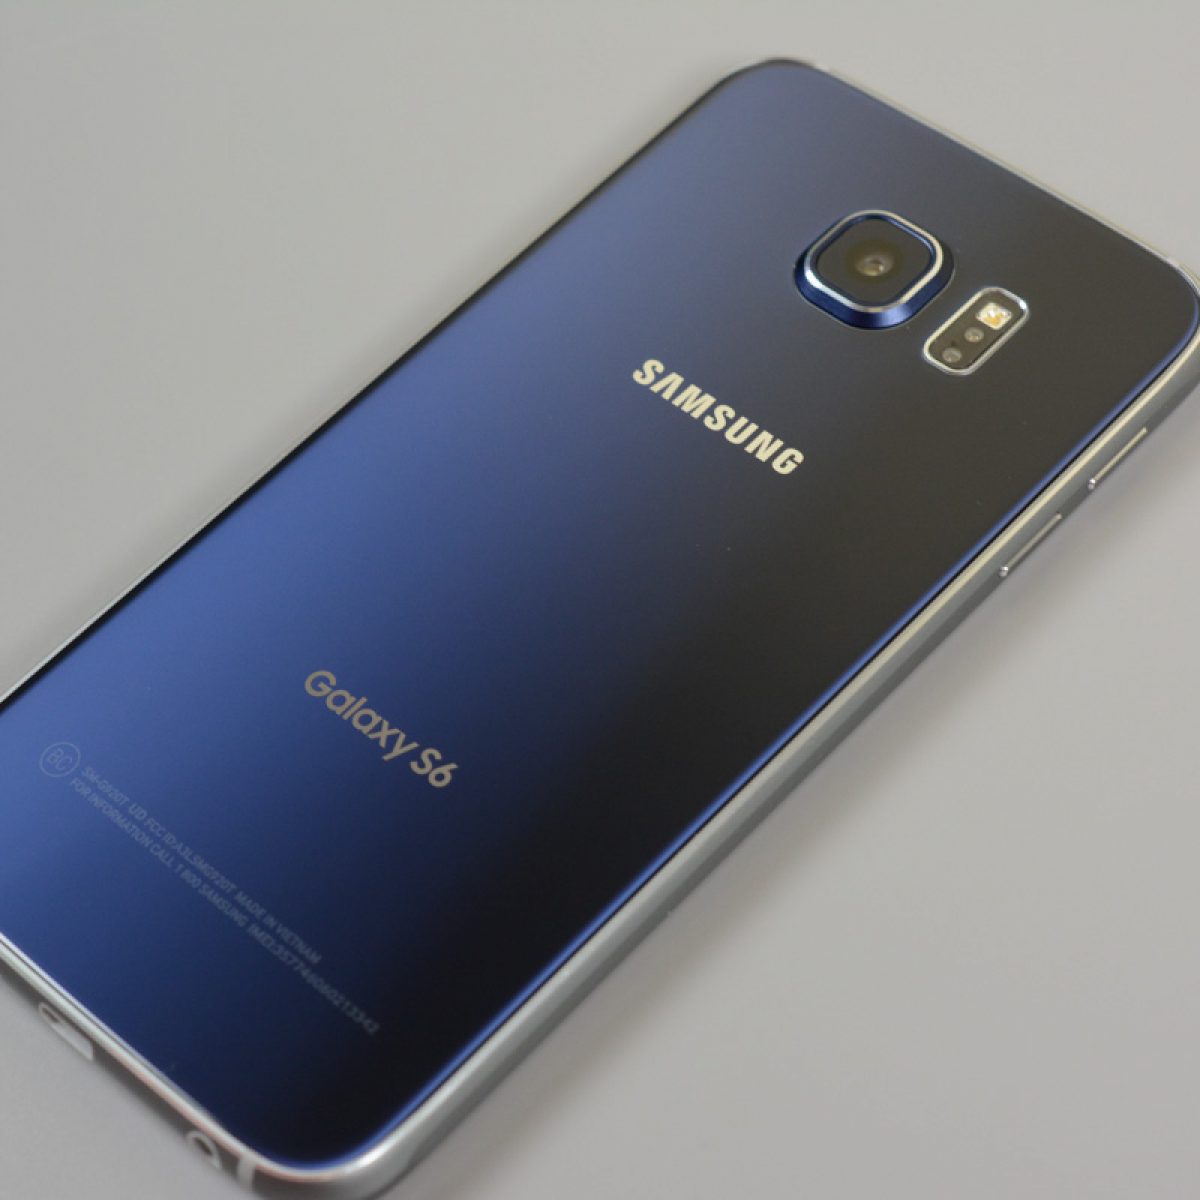 Consulaat ingewikkeld schouder Samsung Galaxy S6 Unboxing